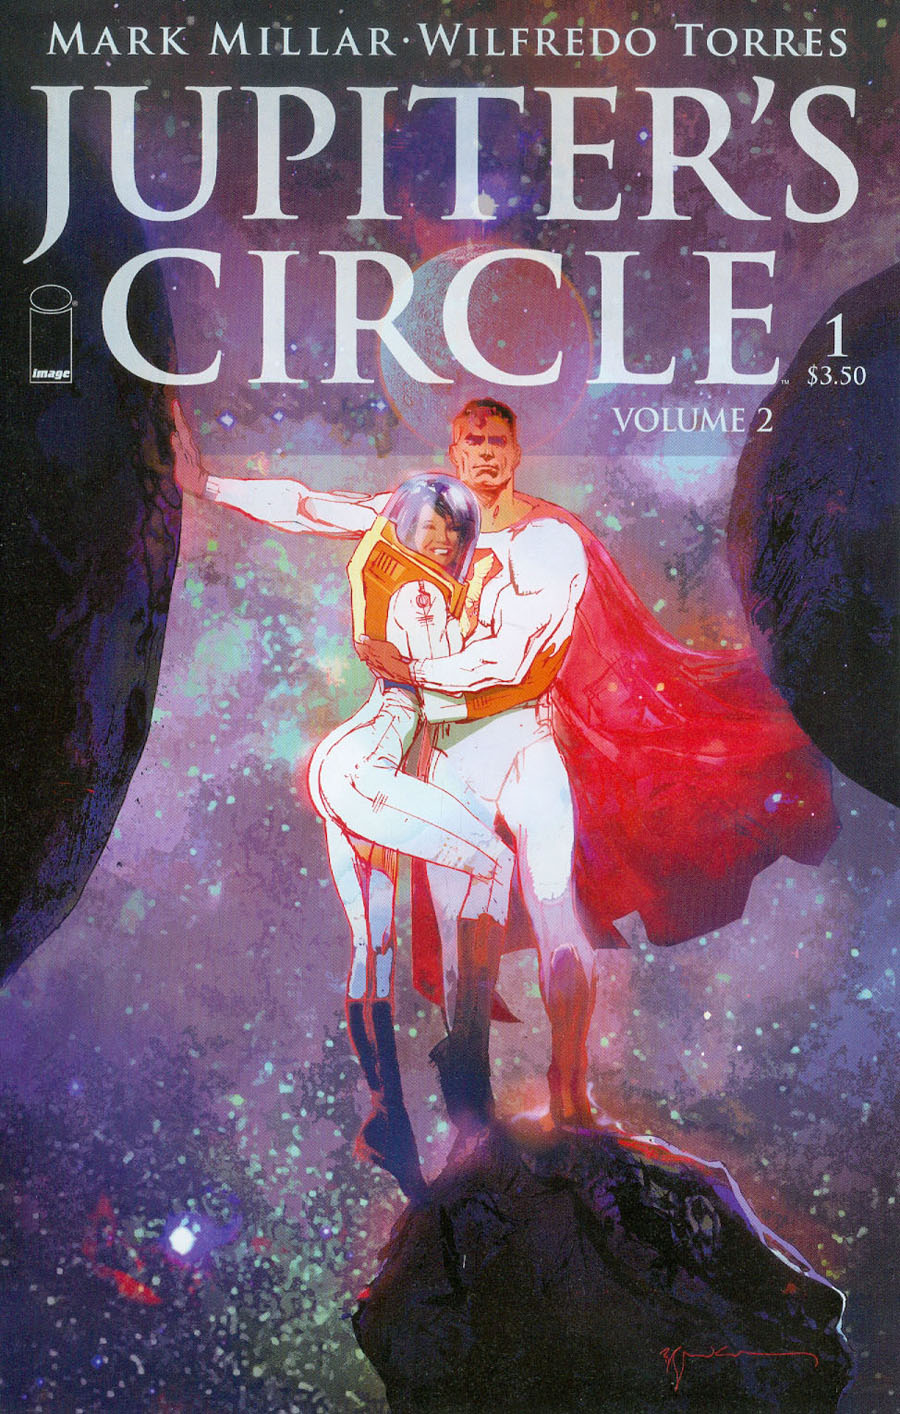 Jupiters Circle Vol 2 #1 Cover A Bill Sienkiewicz